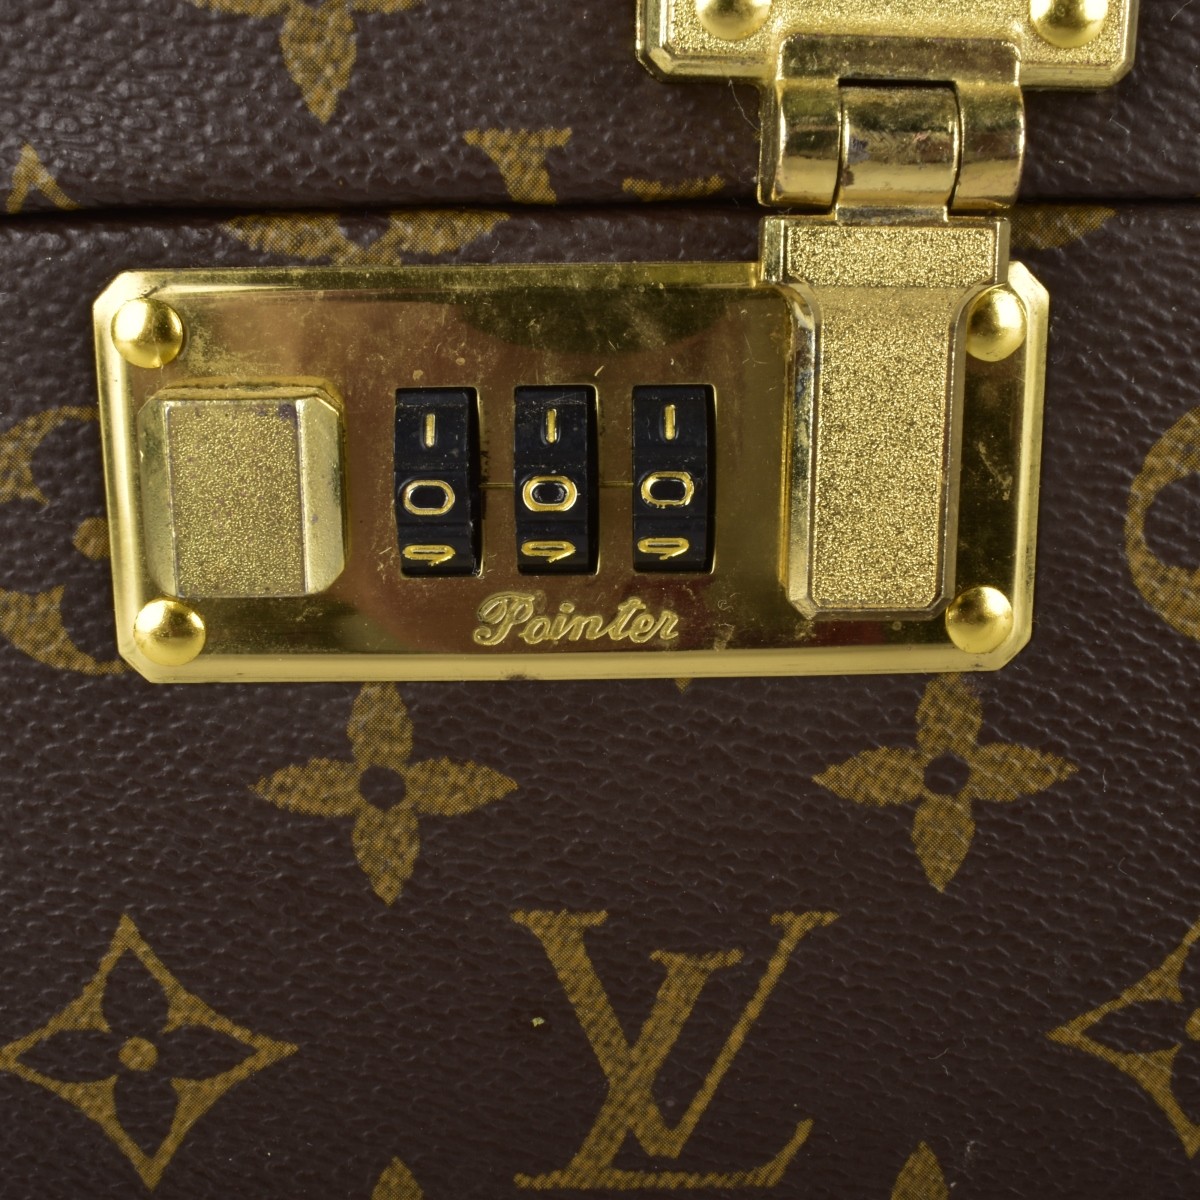 Faux Louis Vuitton Travel Case